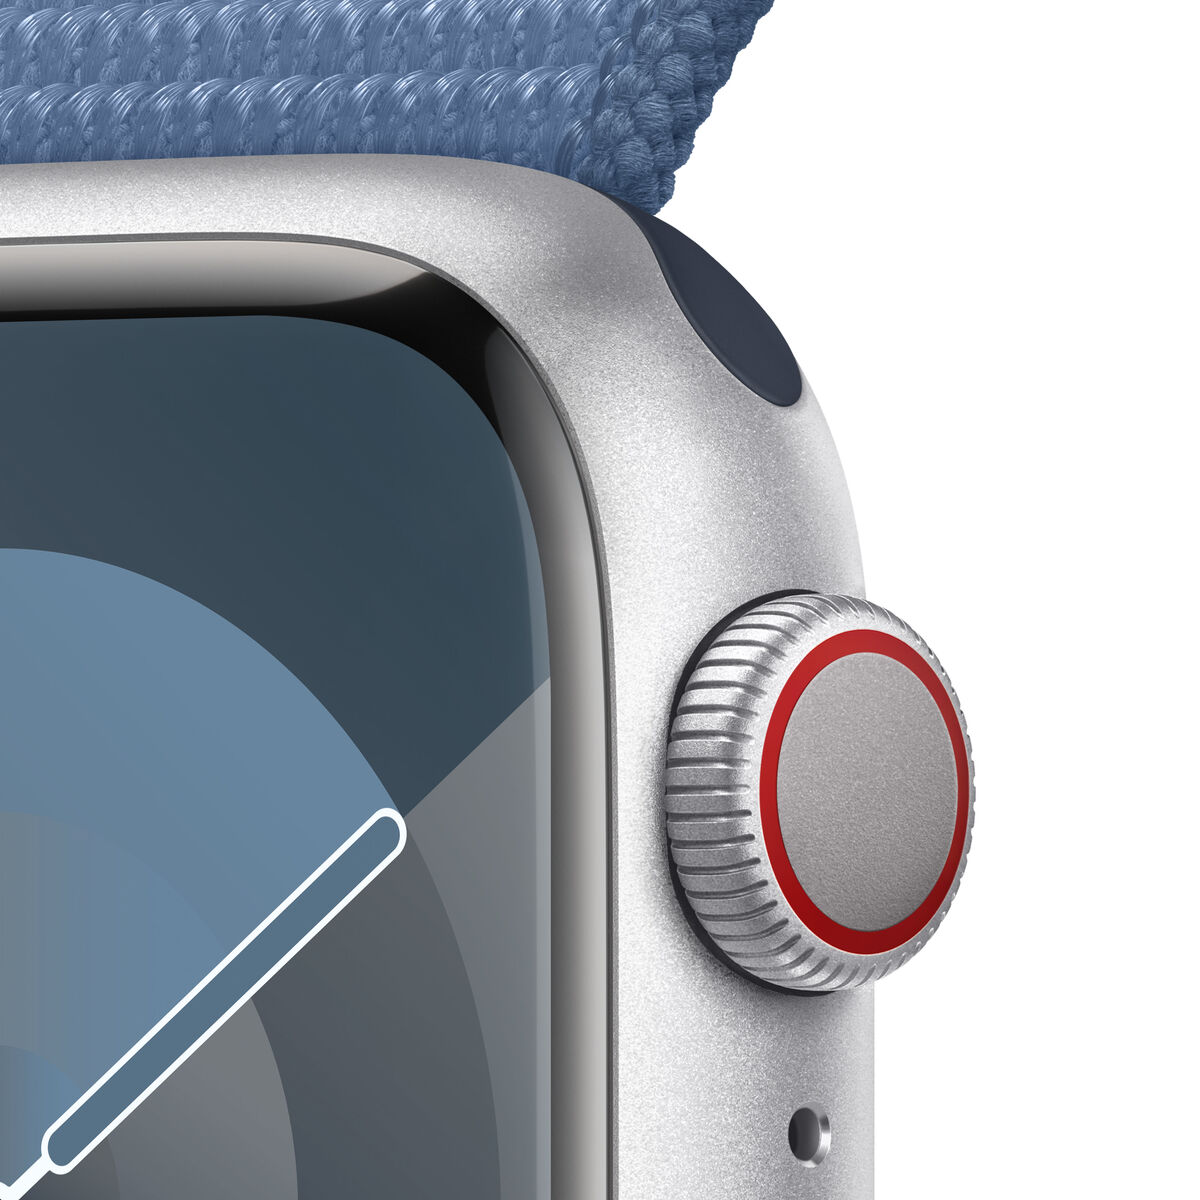 Smartwatch Apple Watch Series 9 41 Mm  MKP